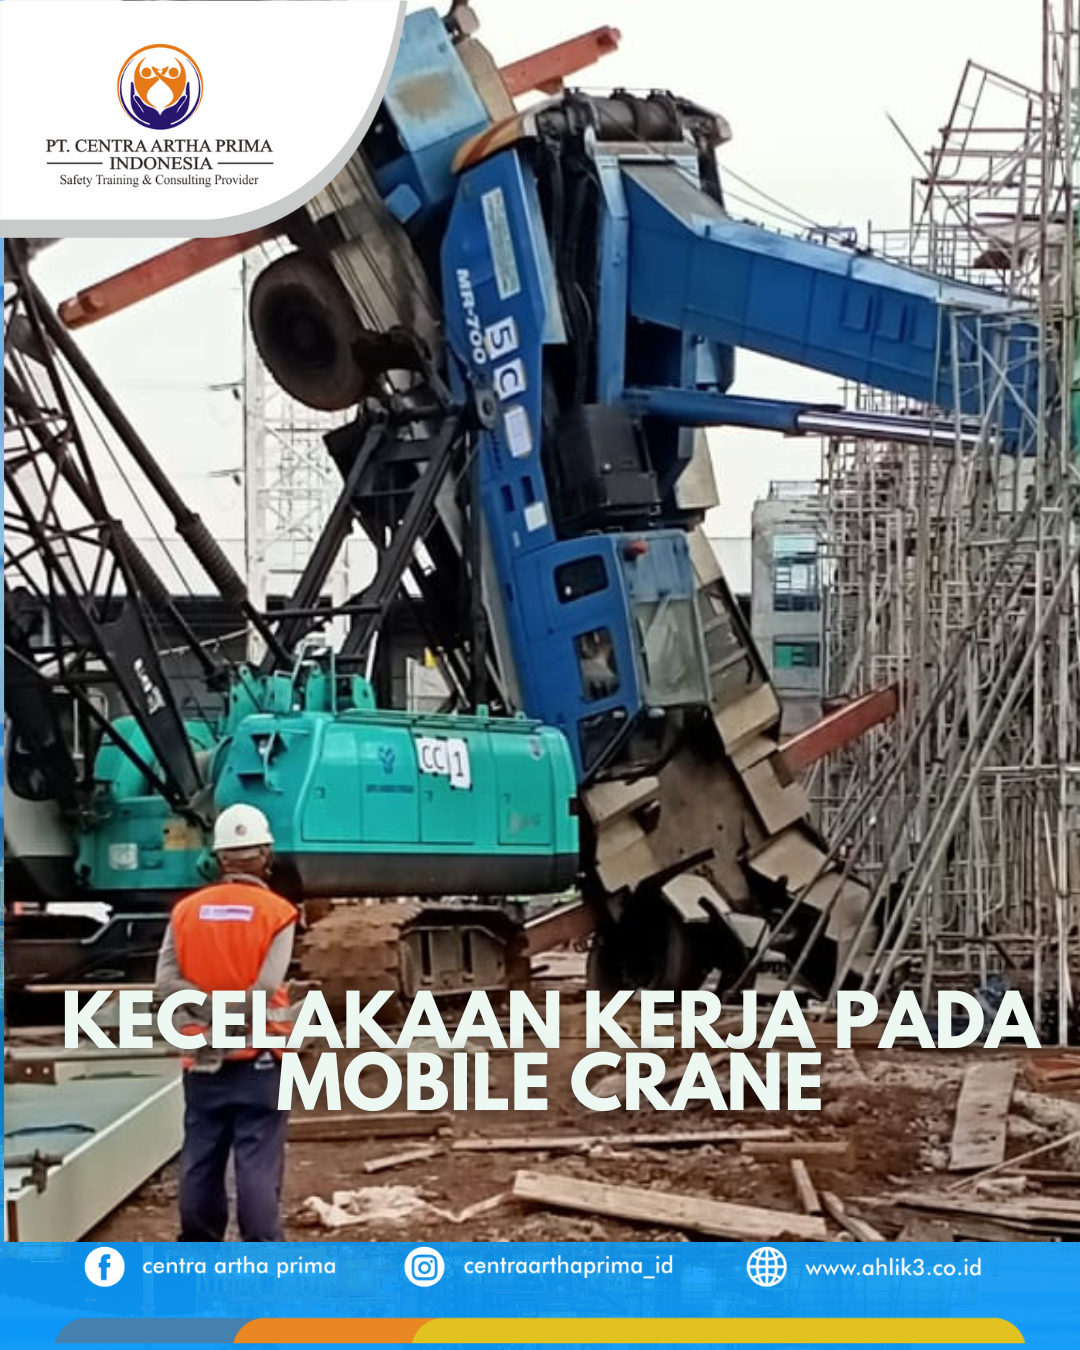 Mengenal dan Mencegah Kecelakaan Kerja pada Mobile Crane